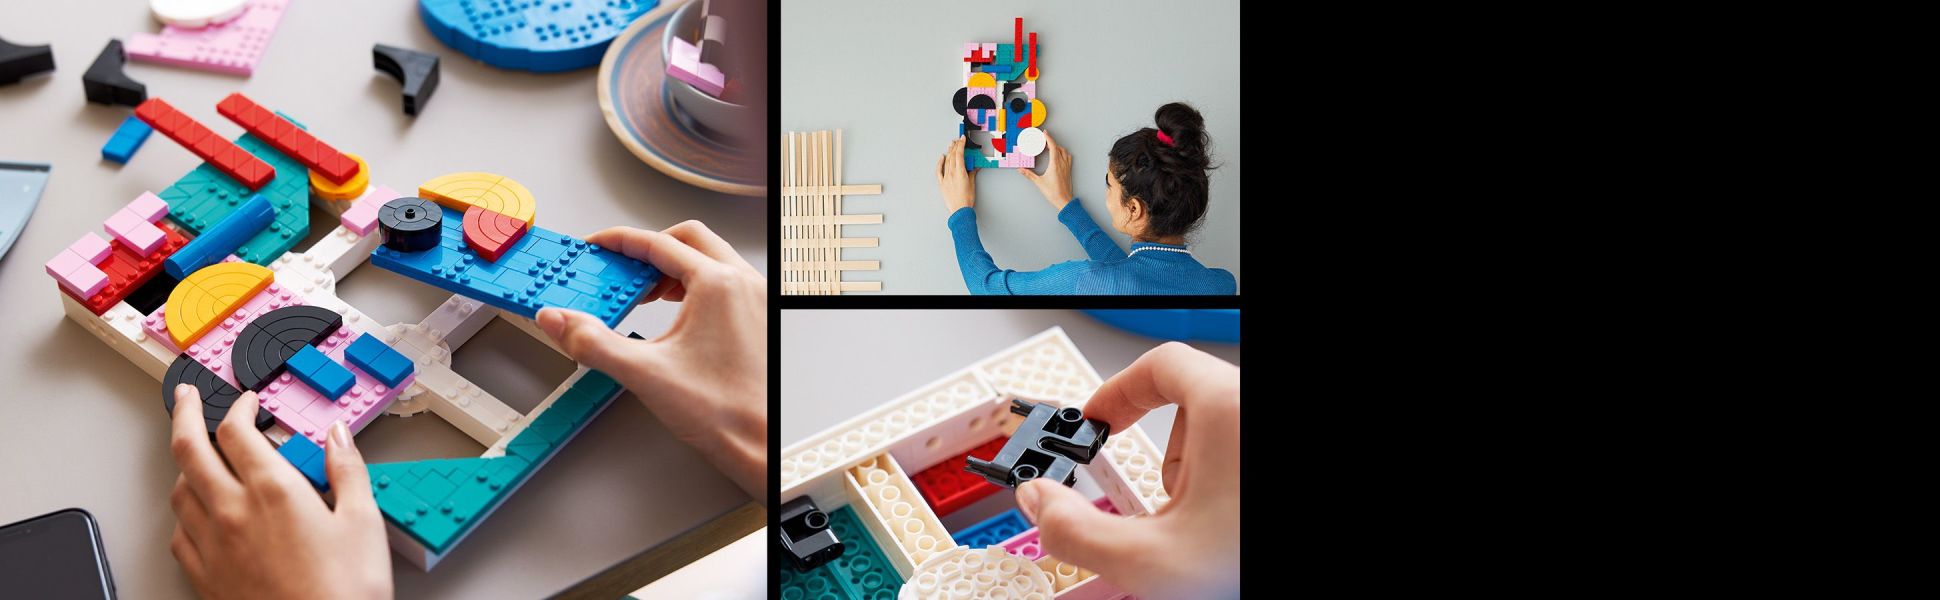 Lego Art Modern Art Abstract Wall Art Building Kit 31210 : Target